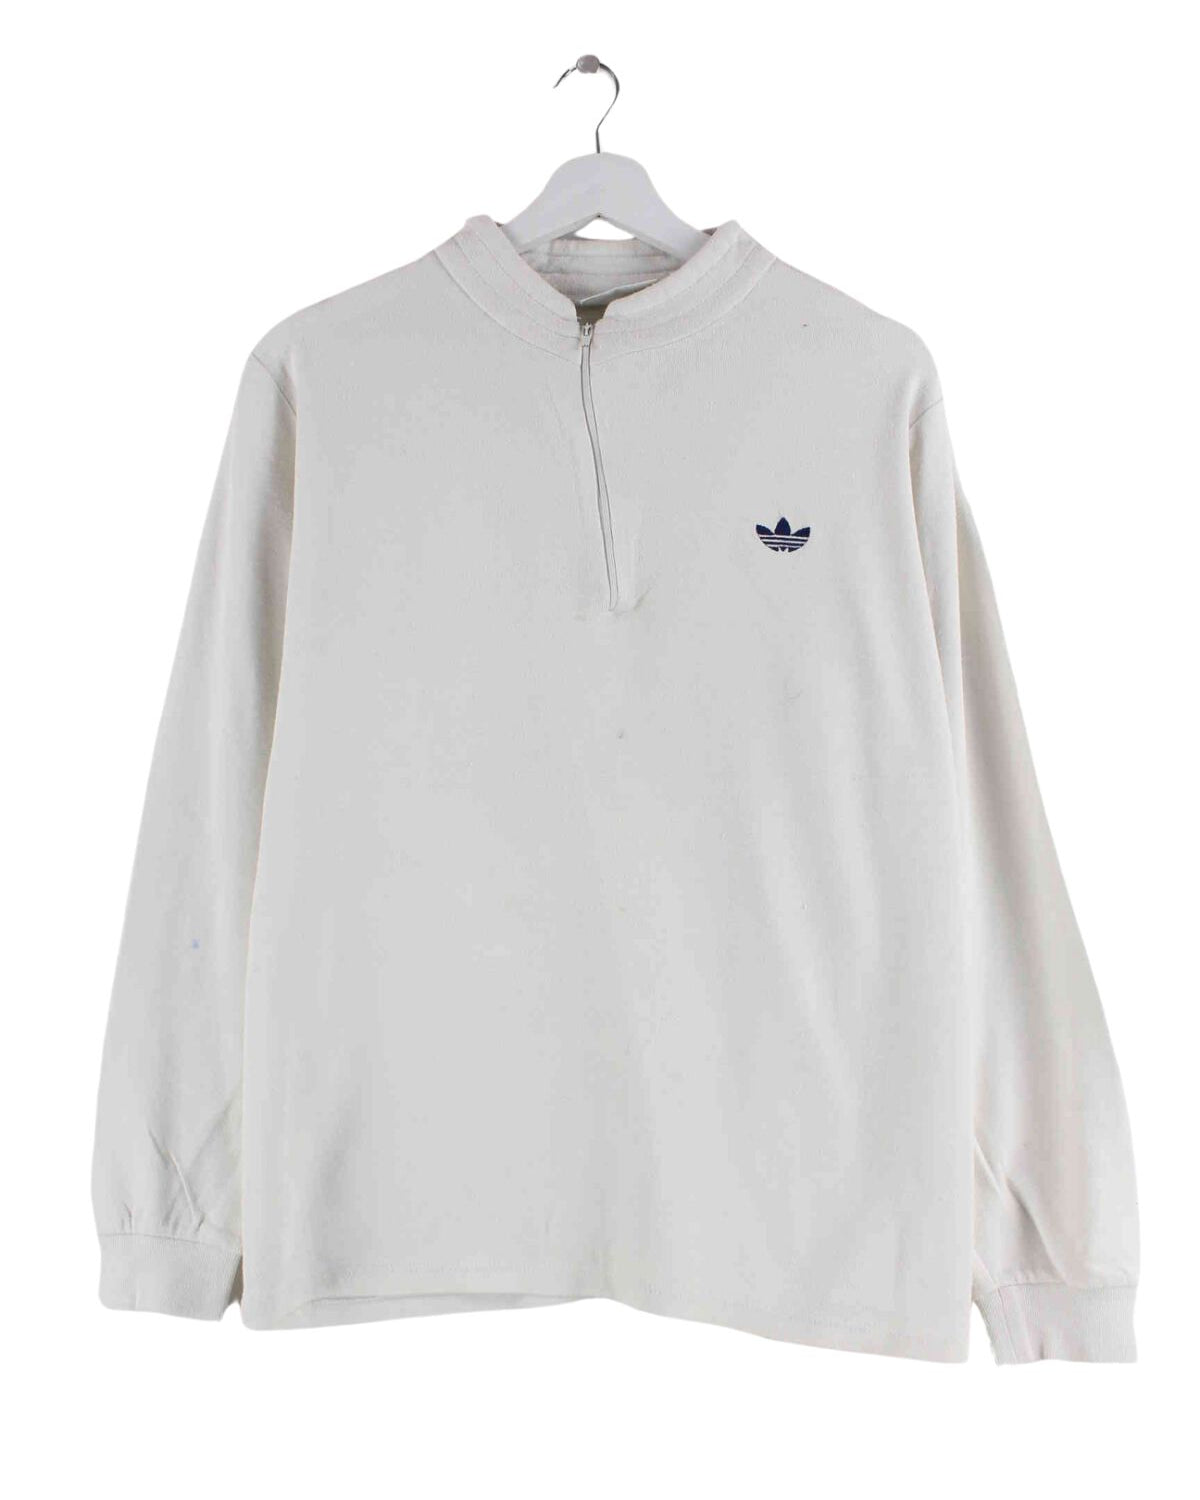 Adidas Damen 80s Vintage Half Zip Sweater Beige L (front image)